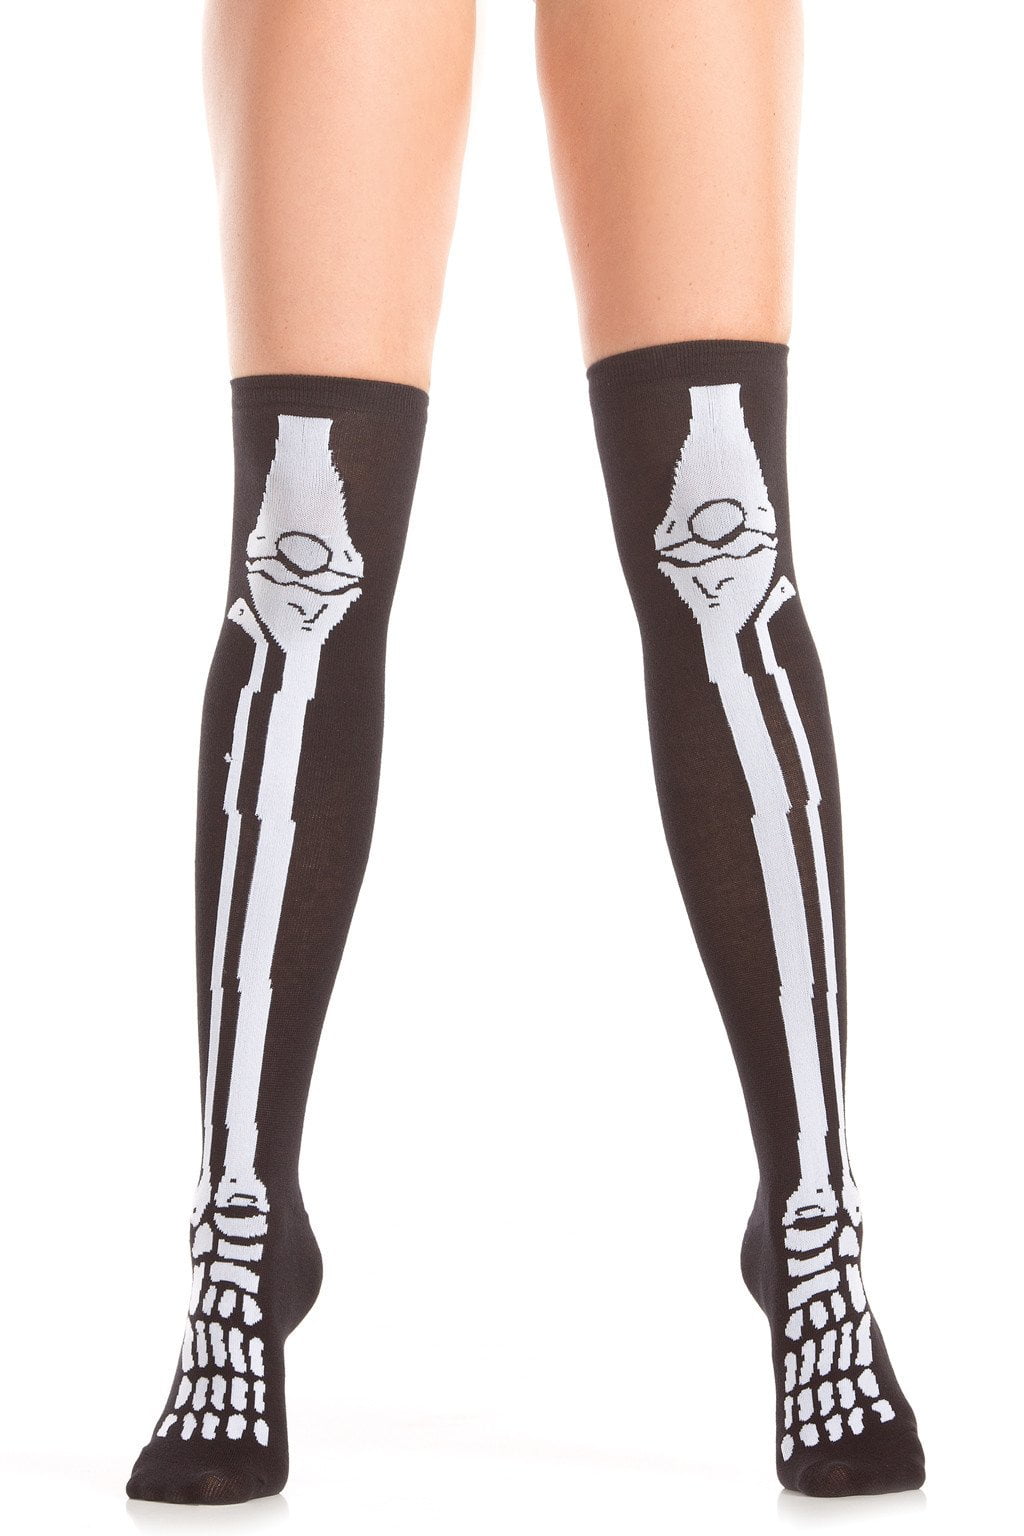 Skeleton Bones Knee Highs Stockings Socks Costume Black White BW403 